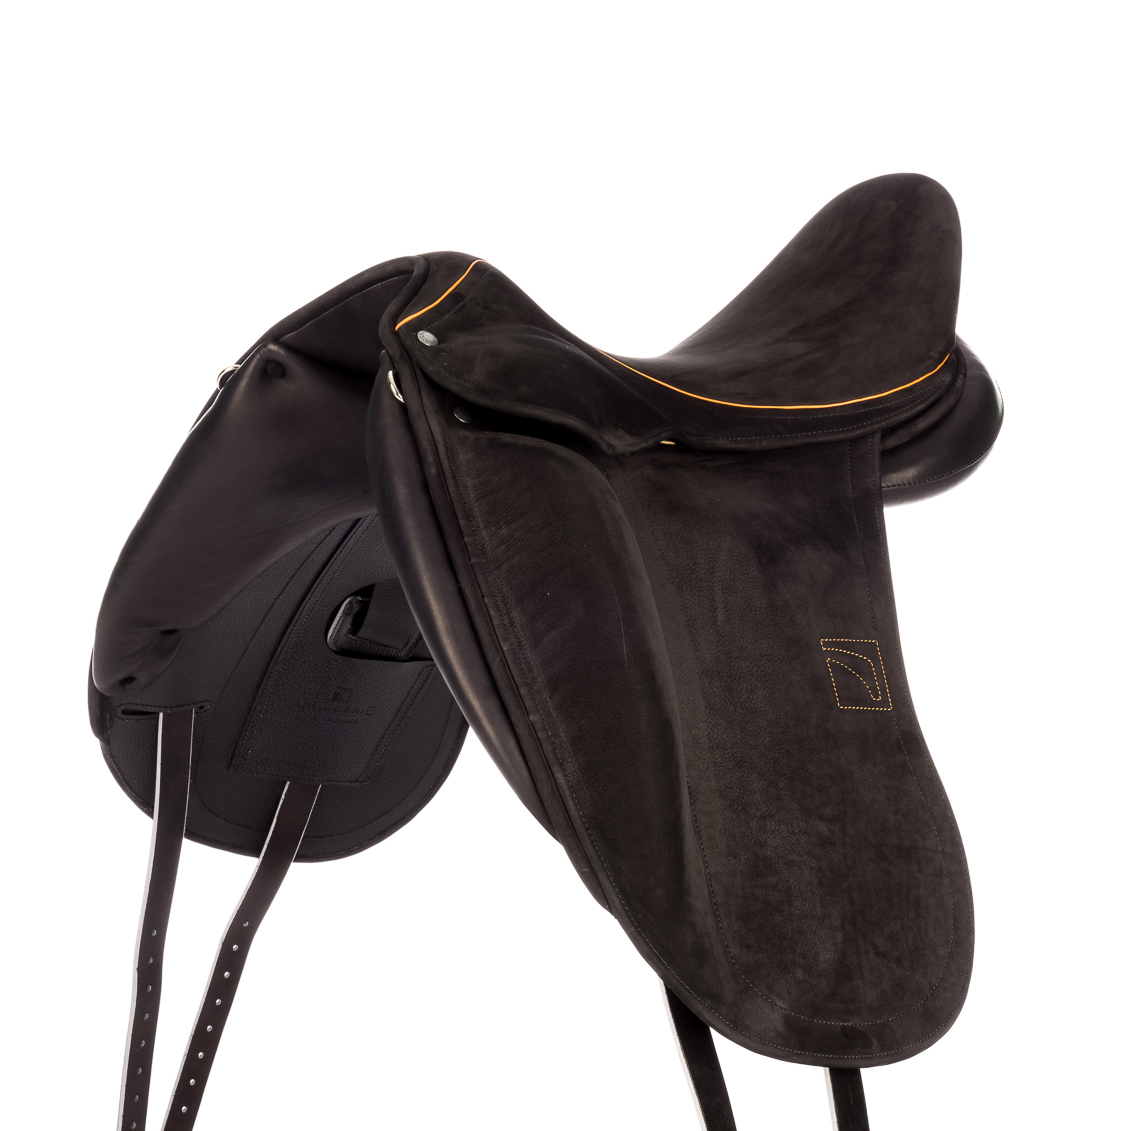 Modèle DGP dressage selle sur-mesure Childéric cuir bespoke saddle fait en France made in France fait main